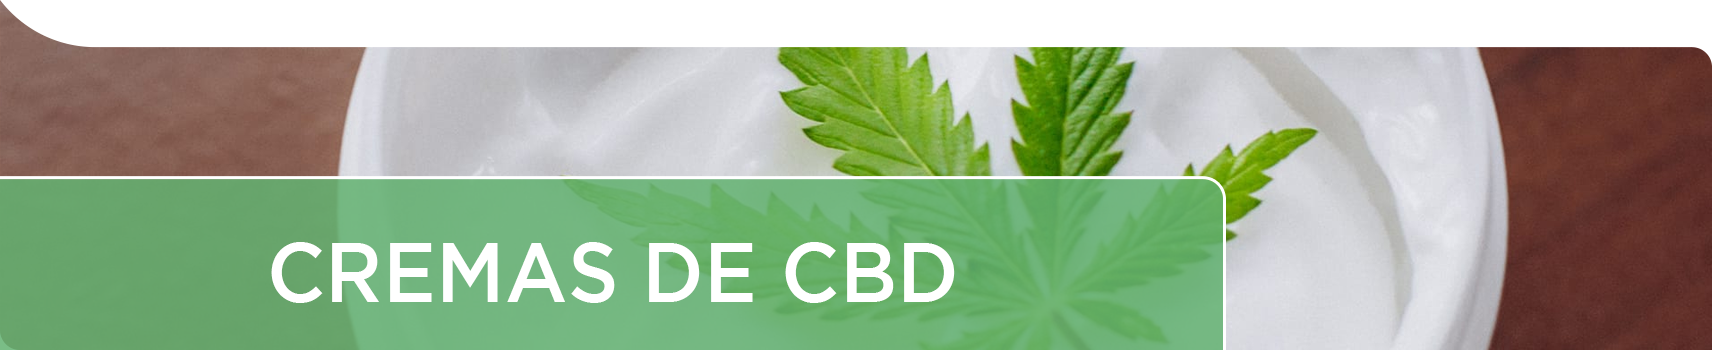 Cremas con CBD de la planta del cannabis, con cannabidiol